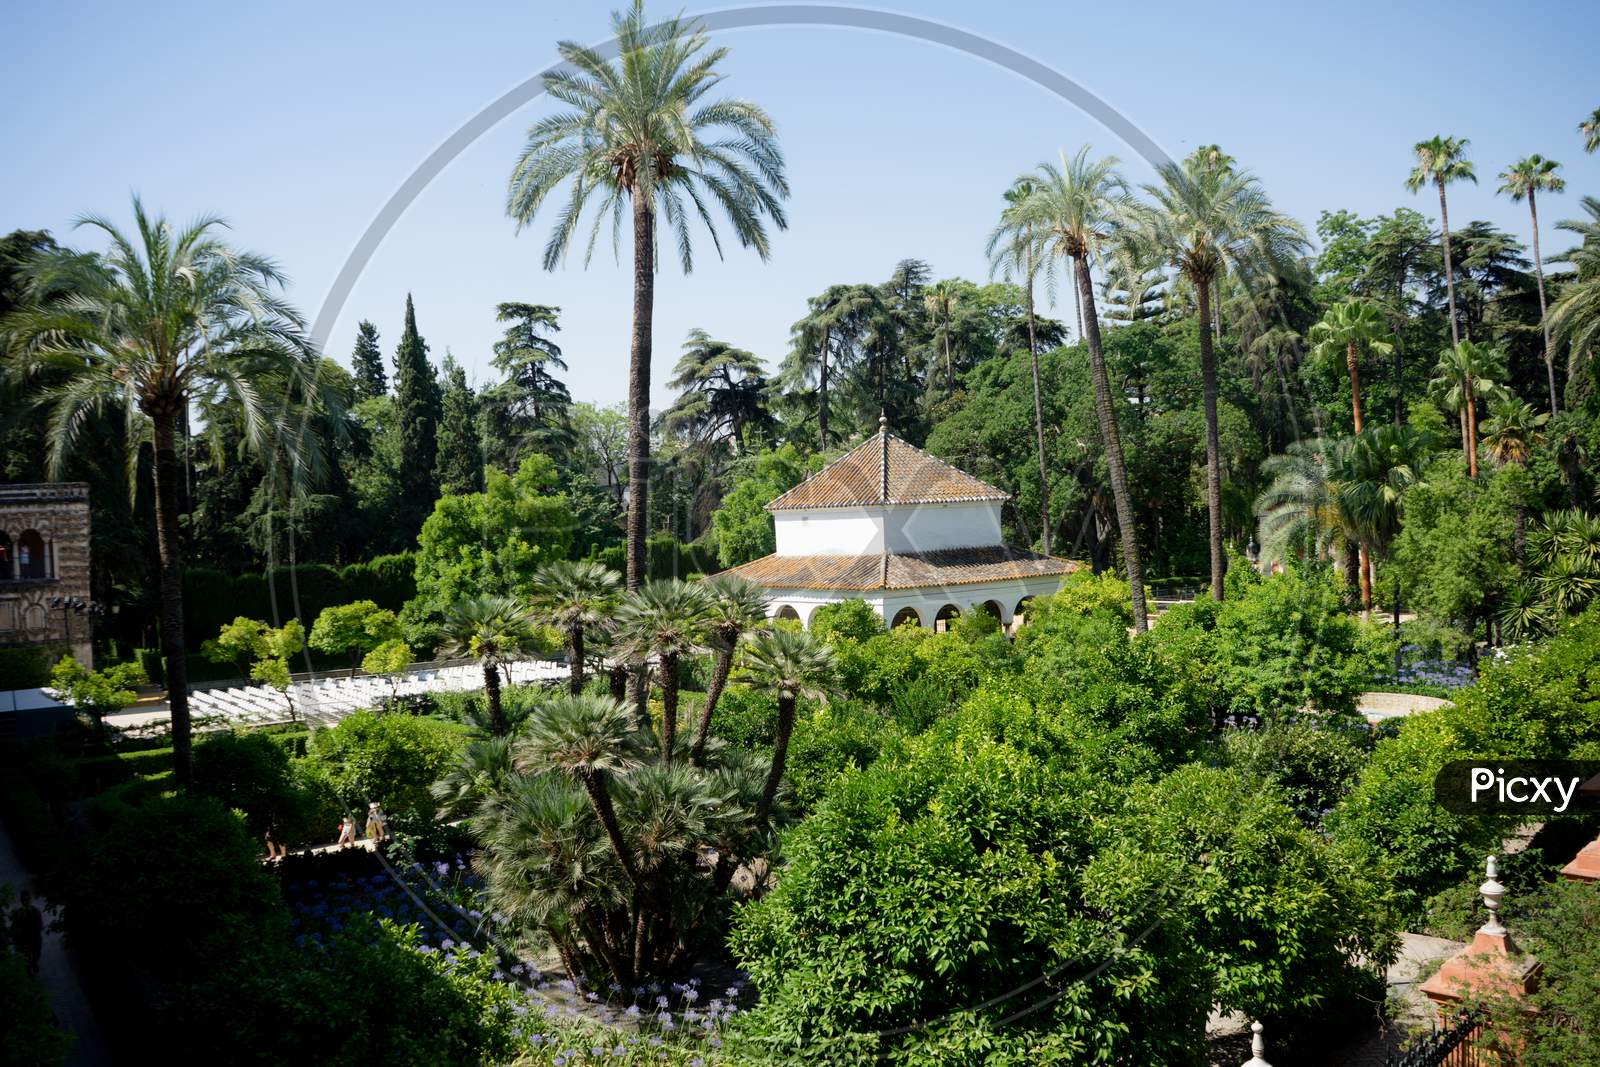 Seville, Spain - June 19: The Palm Tree In The Alcazar Garden, Seville, Spain On June 19, 2017.